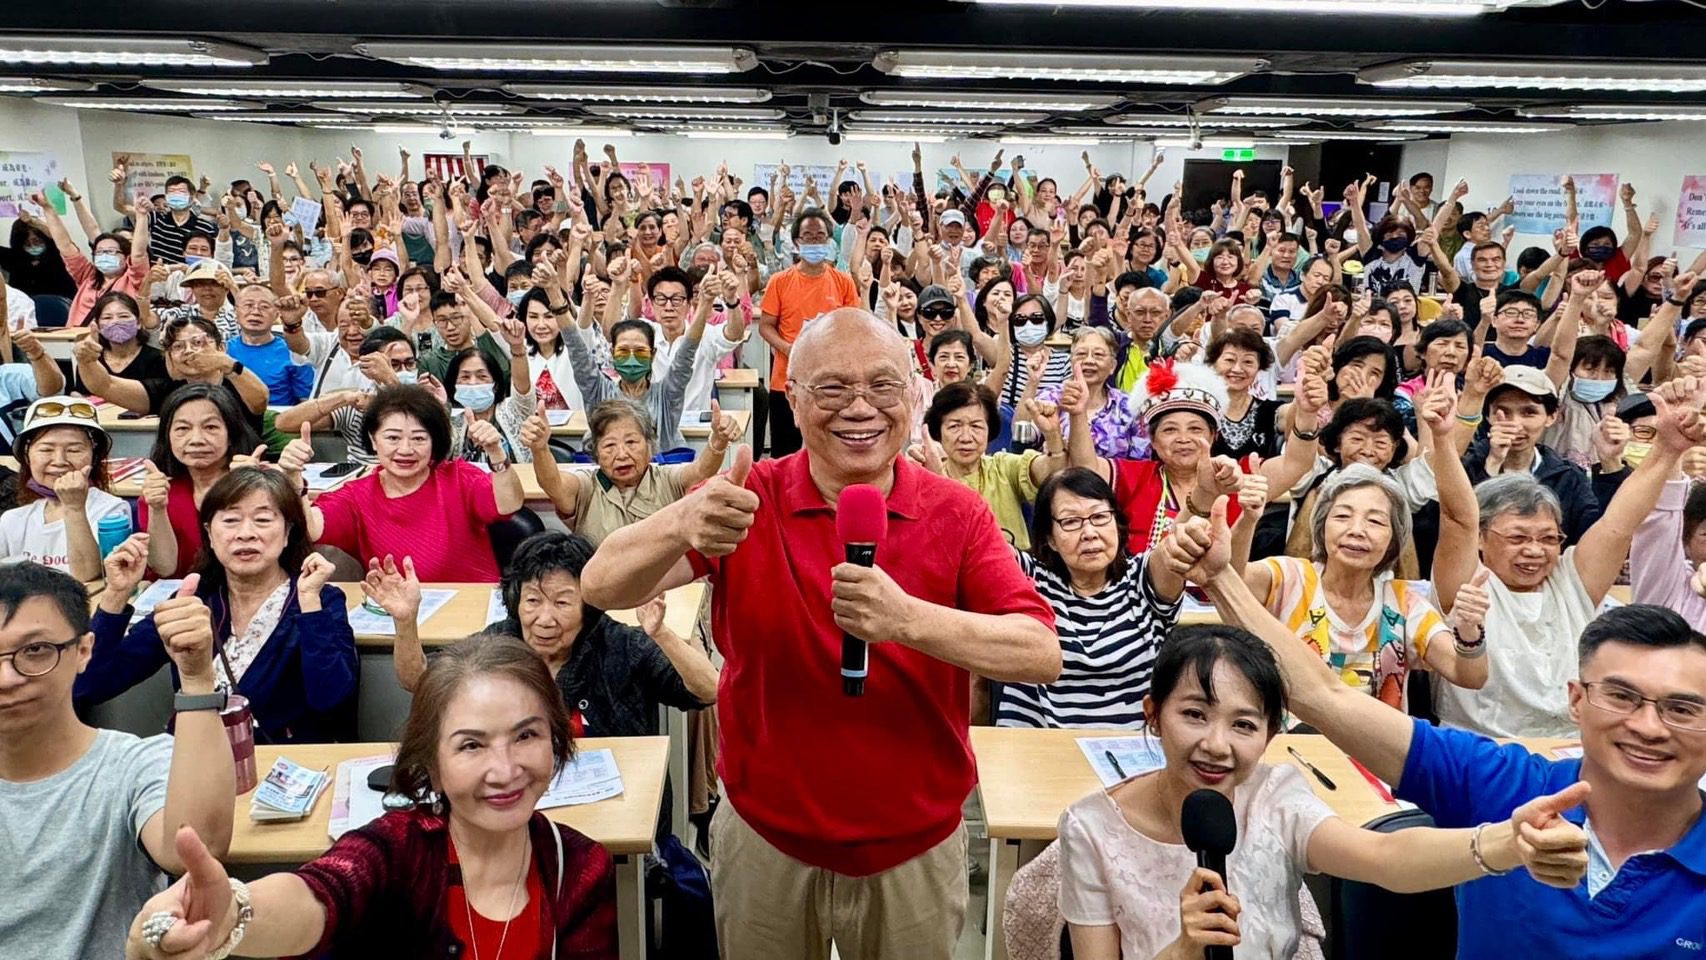 劉毅老師完美英語魅力無法擋 粉絲瘋狂組團 台灣課堂擠破門